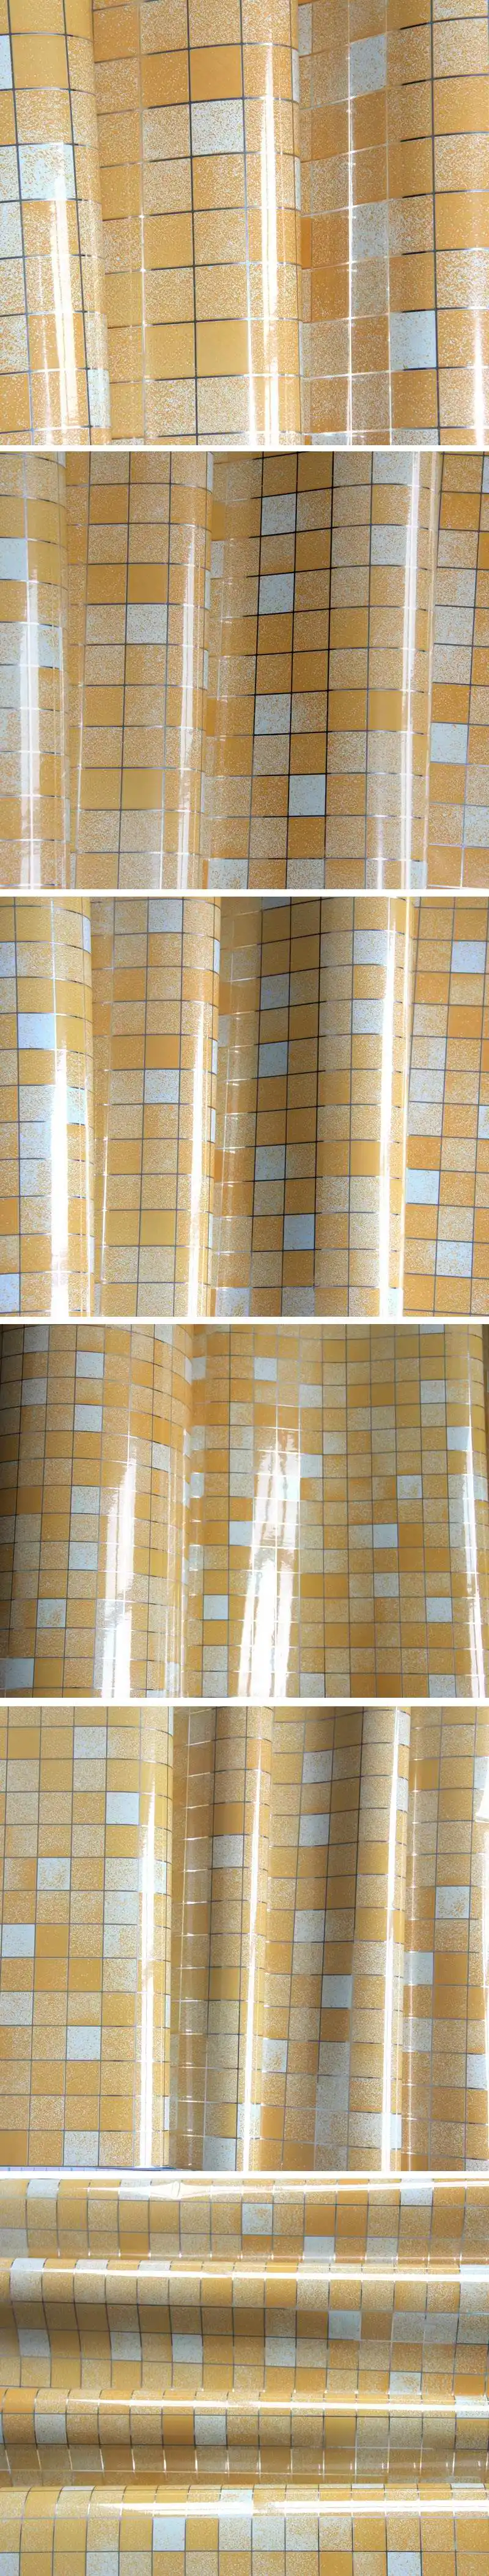 5 метров Алюминий Фольга самоклеющаяся мозаика Наклейки Кухня анти нефти обои высокого Температура винил Водонепроницаемый стены Стикеры